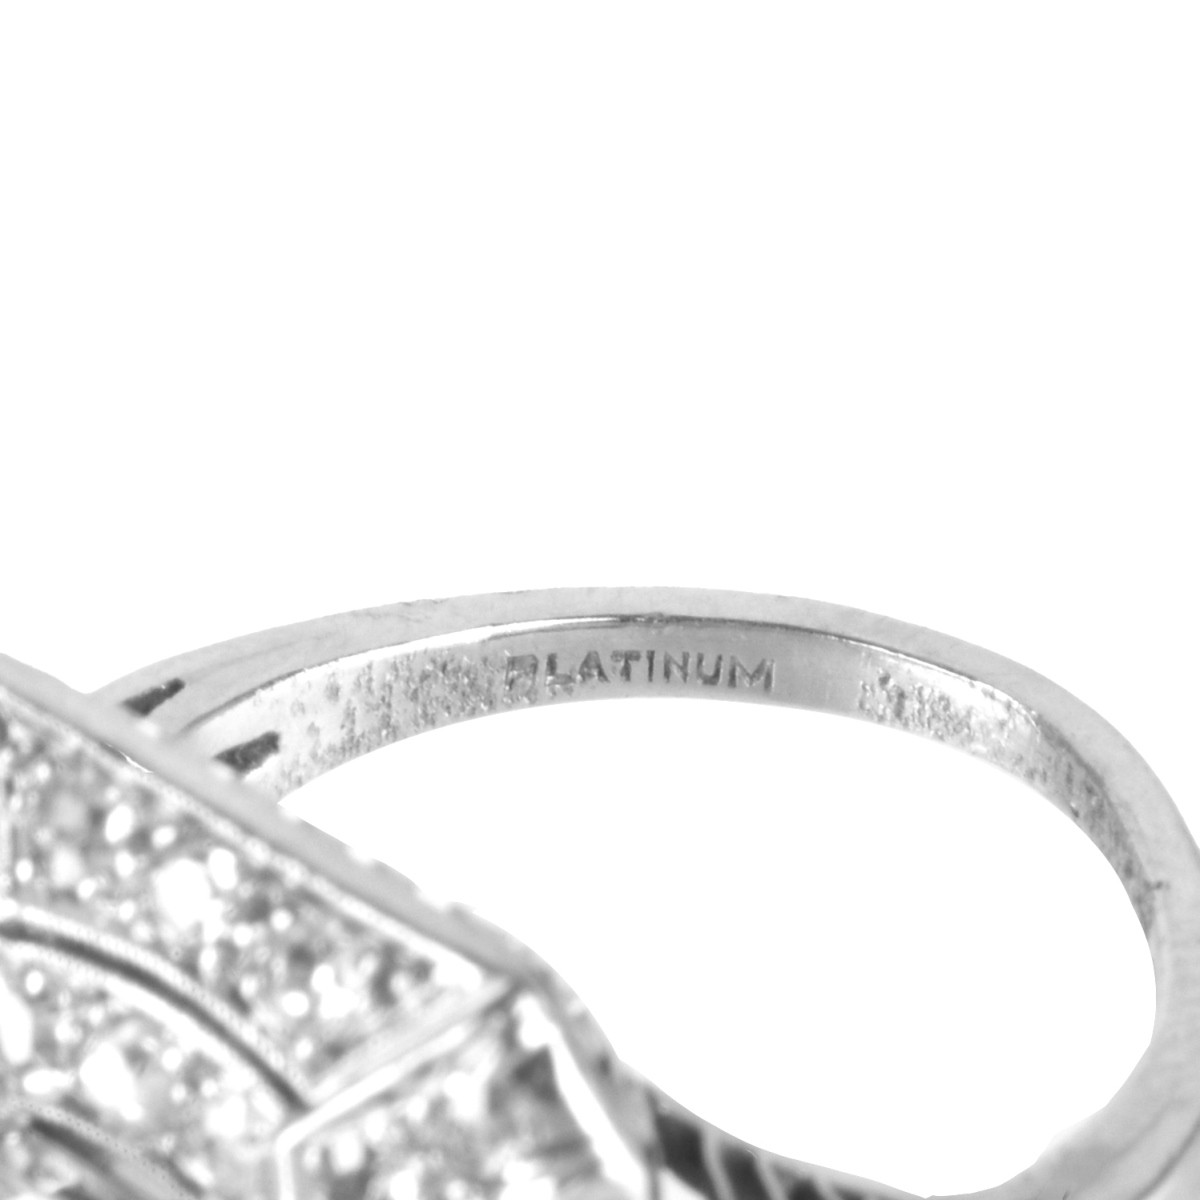 Deco Diamond and Platinum Ring